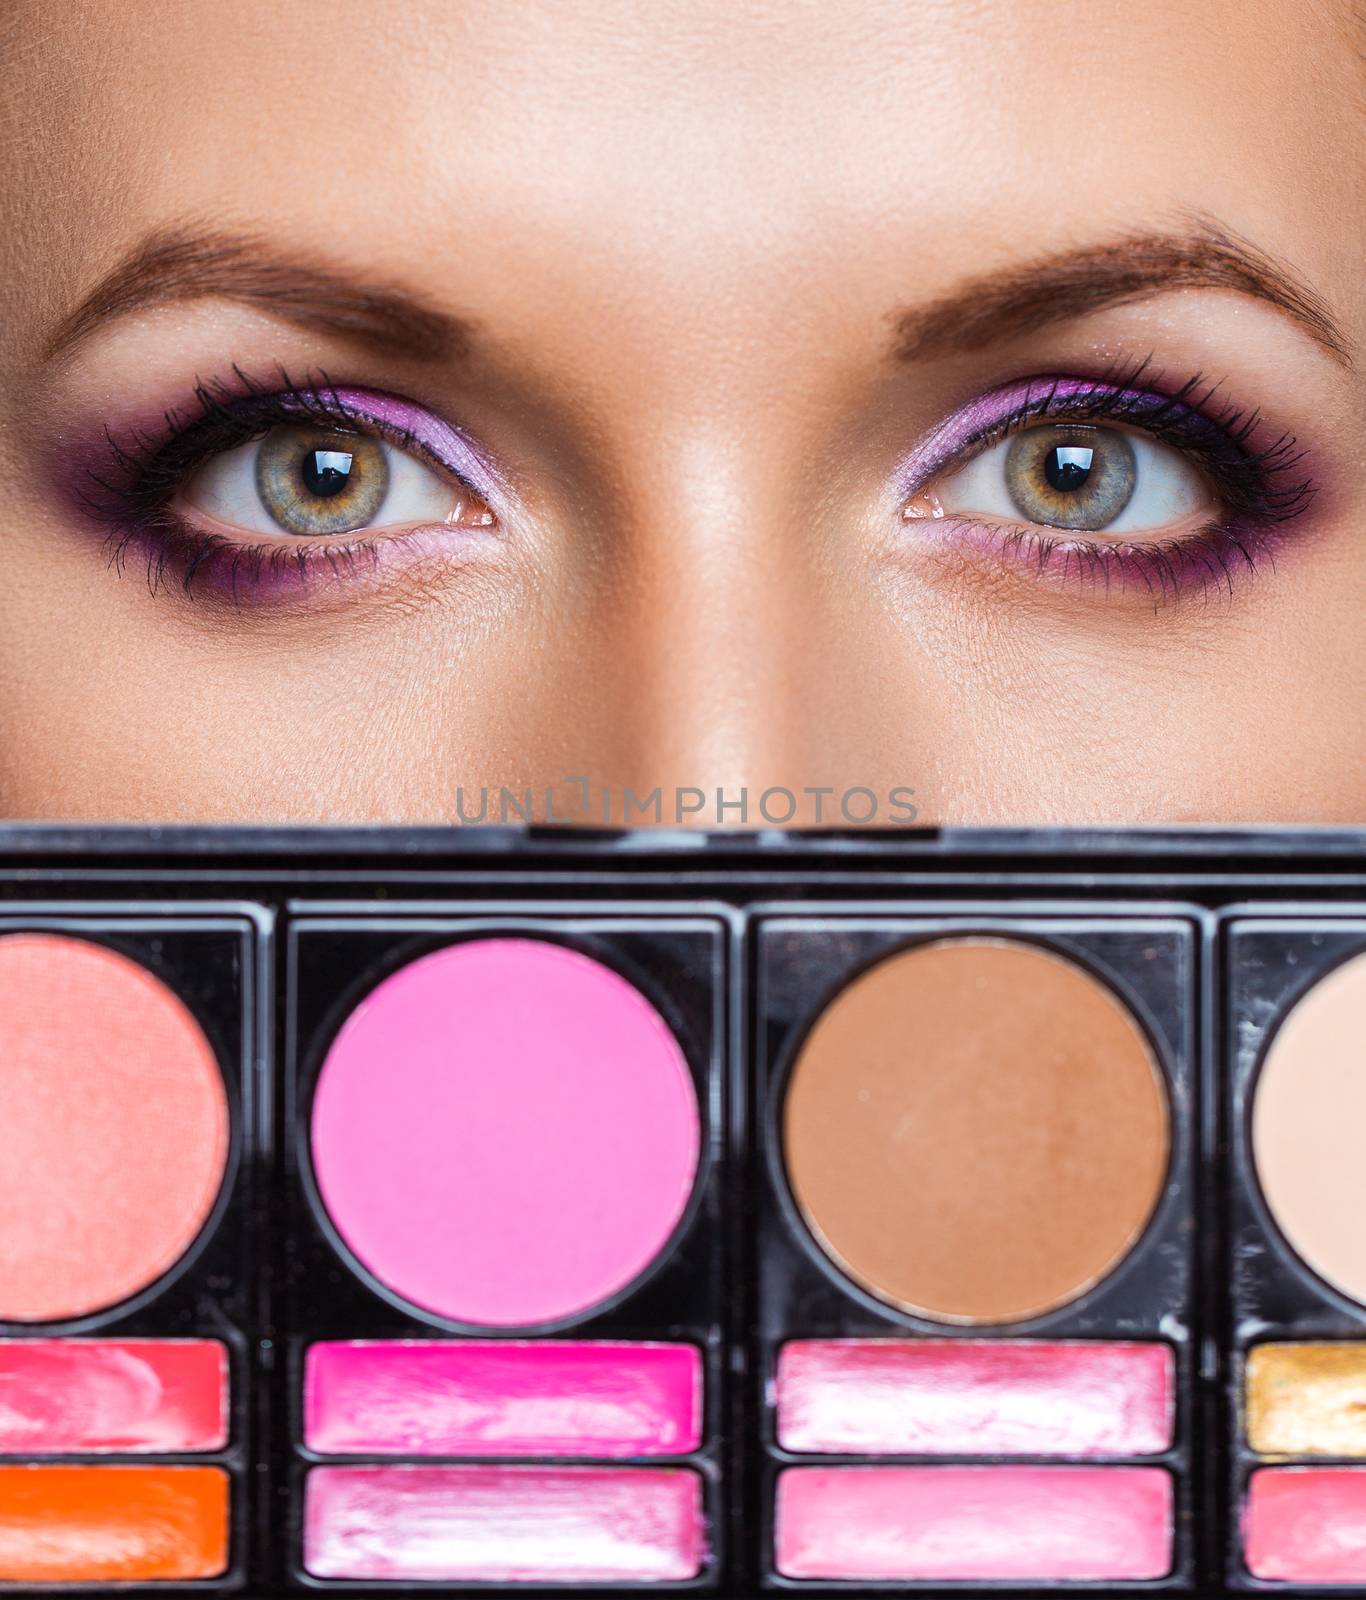 Closeup of beautiful womanish eyes with makeup kit and glamorous makeup